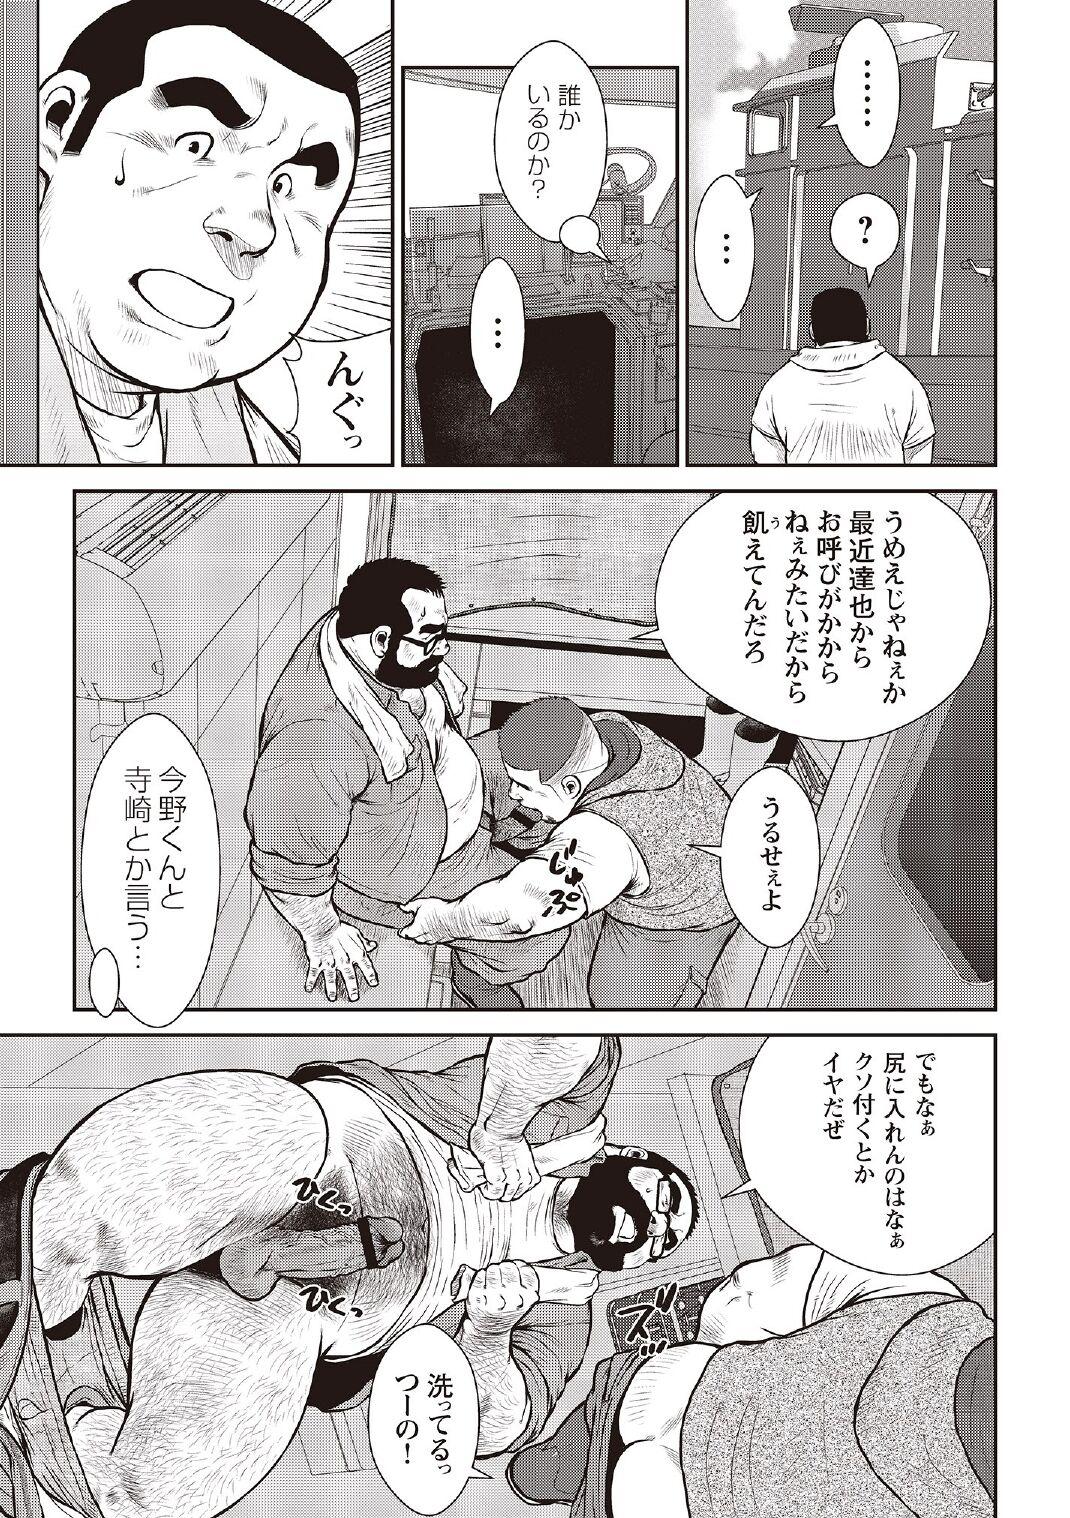 [Ebisubashi Seizou] Ebisubashi Seizou Tanpen Manga Shuu 2 Fuuun! Danshi Ryou [Bunsatsuban] PART 3 Bousou Hantou Taifuu Zensen Ch. 3 ~ Ch. 5 [Digital] 4